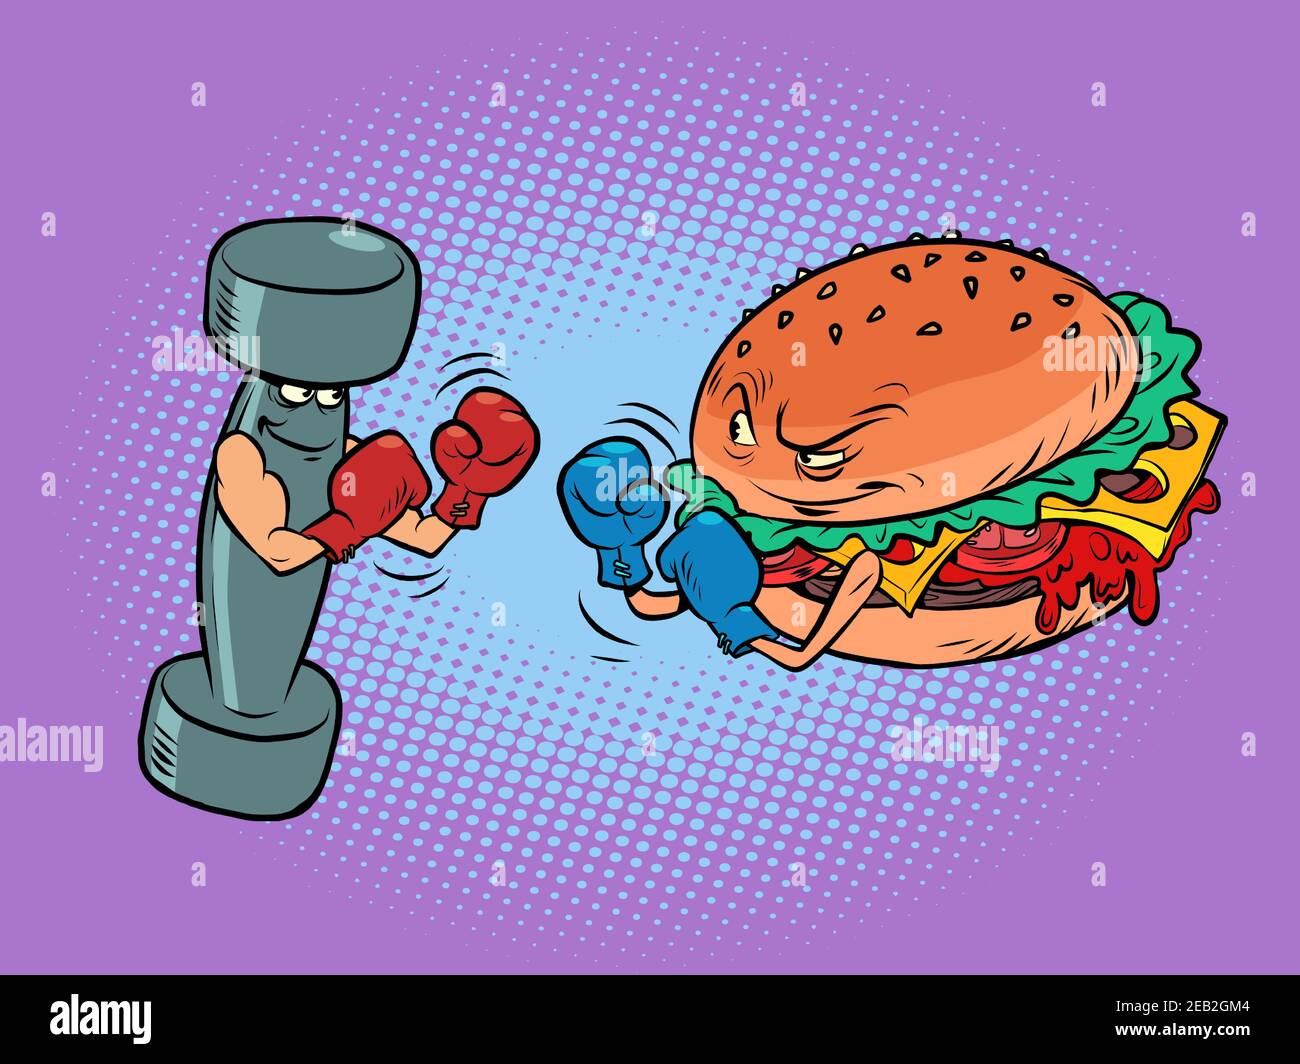 Pugilato dumbbell contro hamburger. Stile di vita sportivo contro nocivo Illustrazione Vettoriale